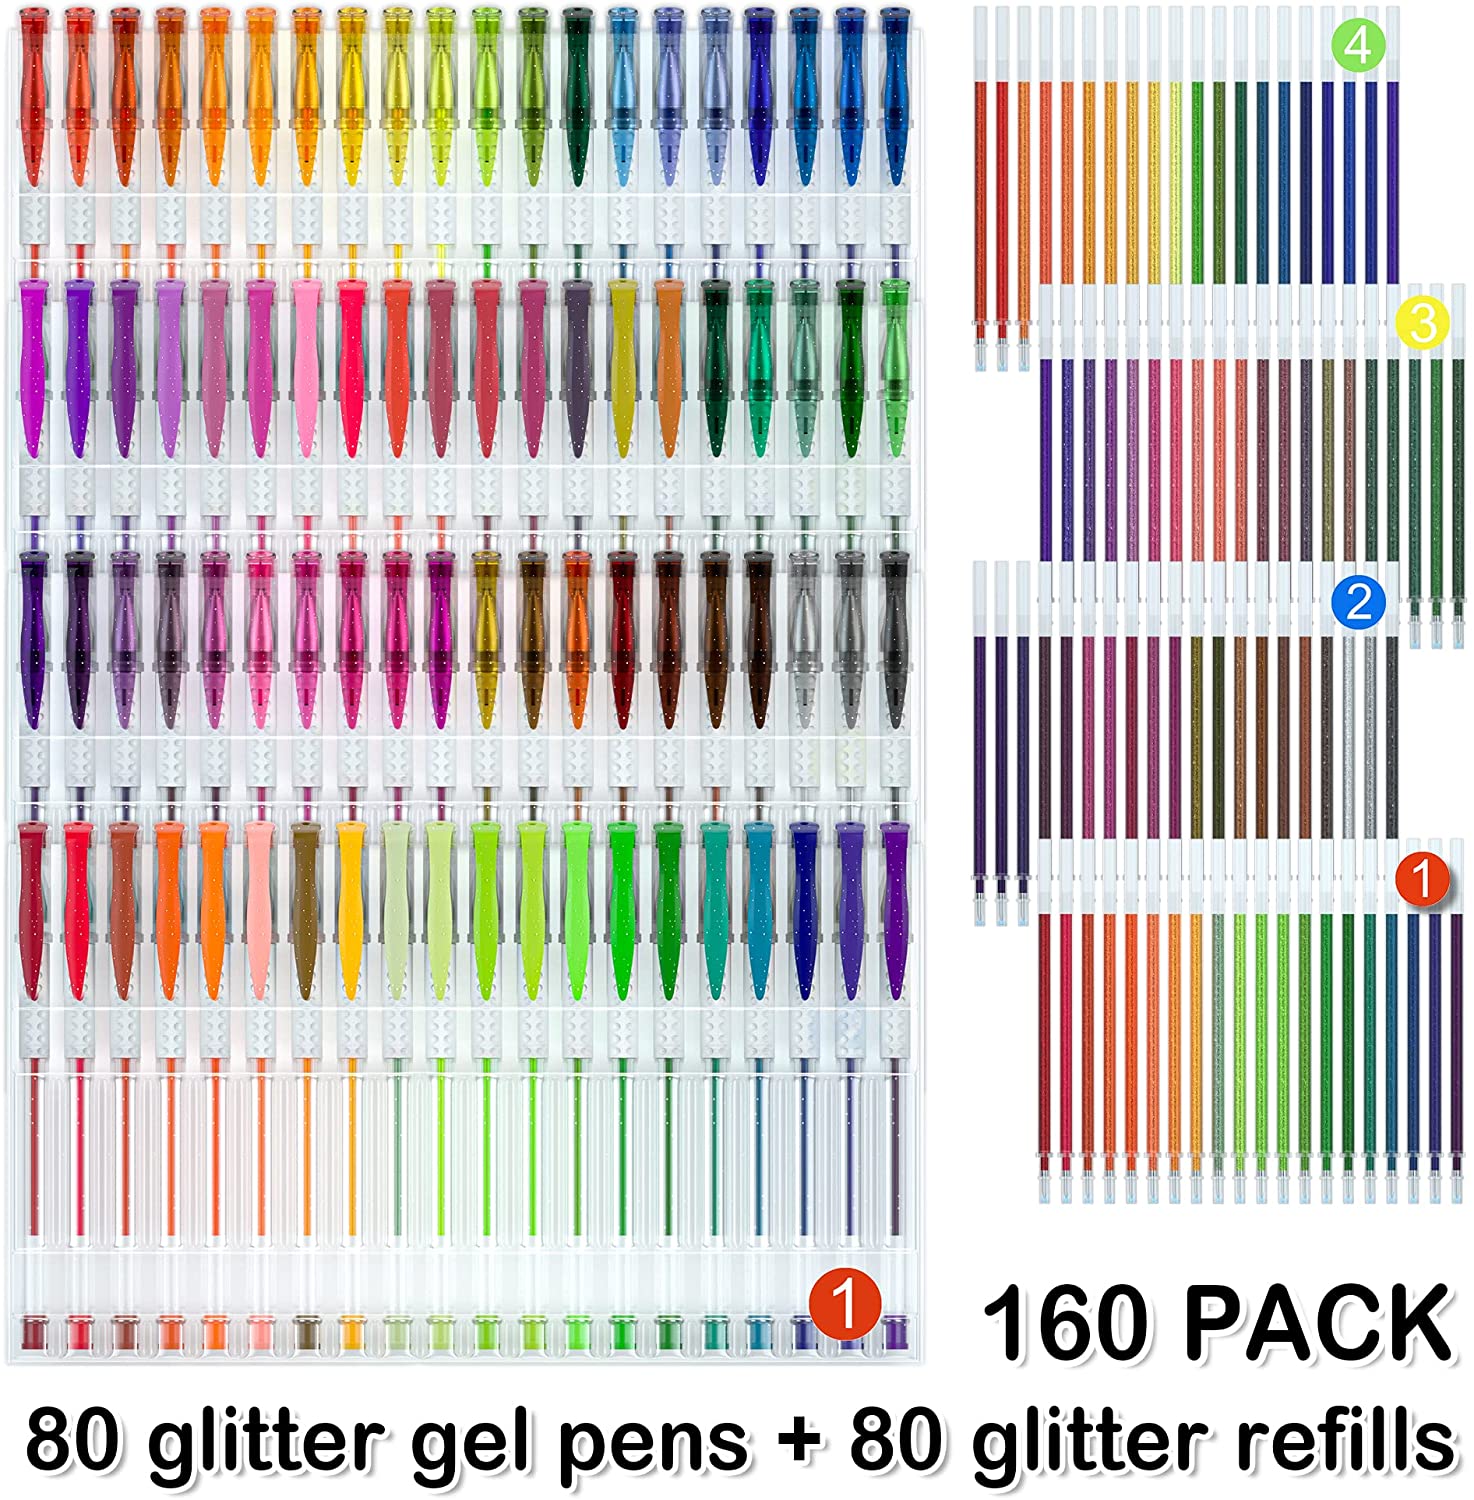 160 Pack Glitter Gel Pens Set, Shuttle Art 220% Ink Glitter Gel Pen 80 Colored Gel Pens Plus 80 Refills for Adult Coloring Books Craft Doodling - image 2 of 8